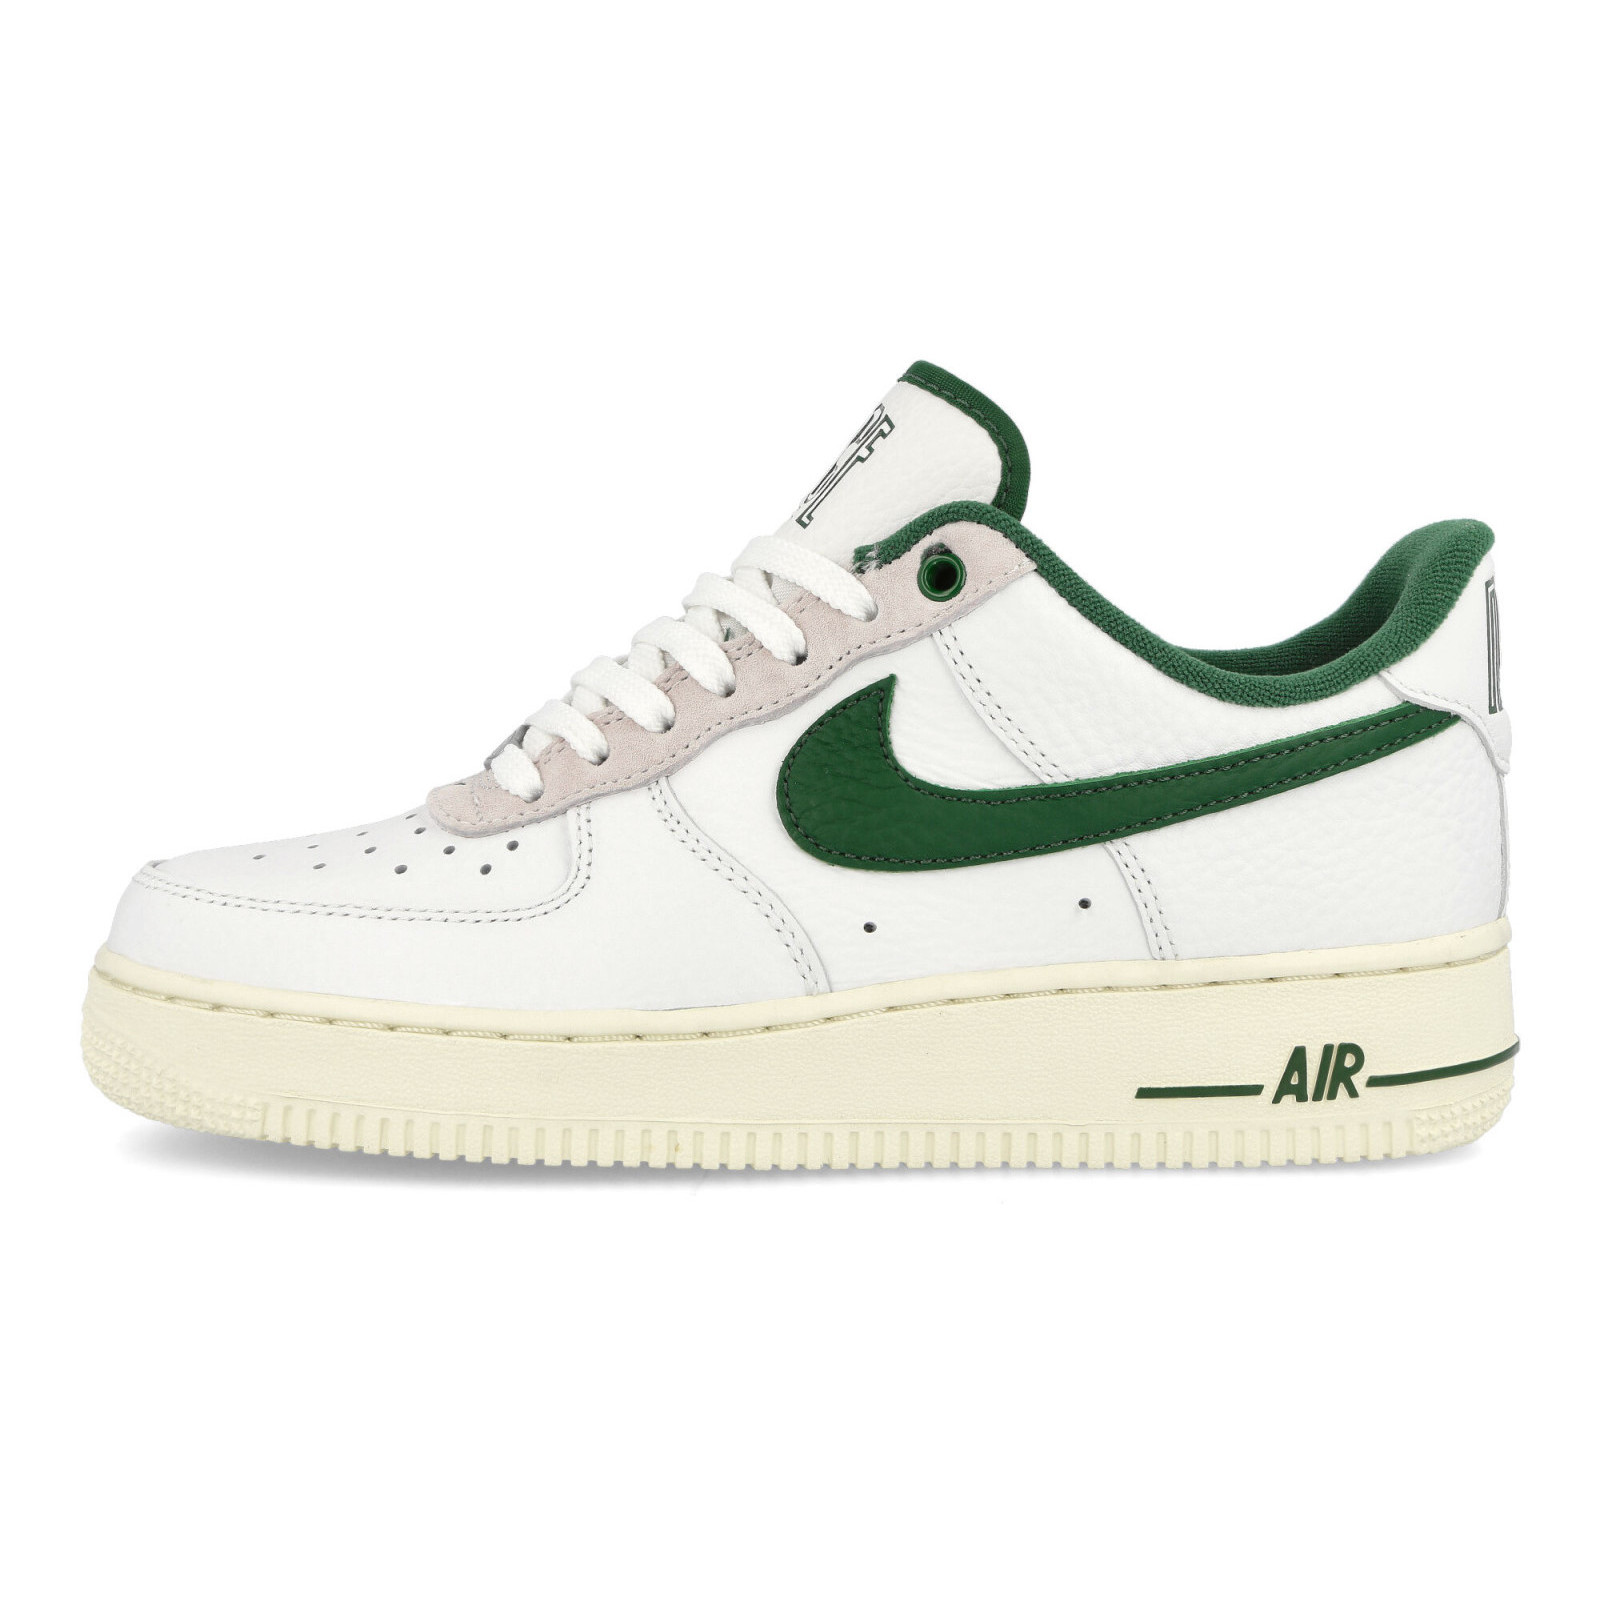 Nike Air Force 1 07 LX
White / Gorge Green